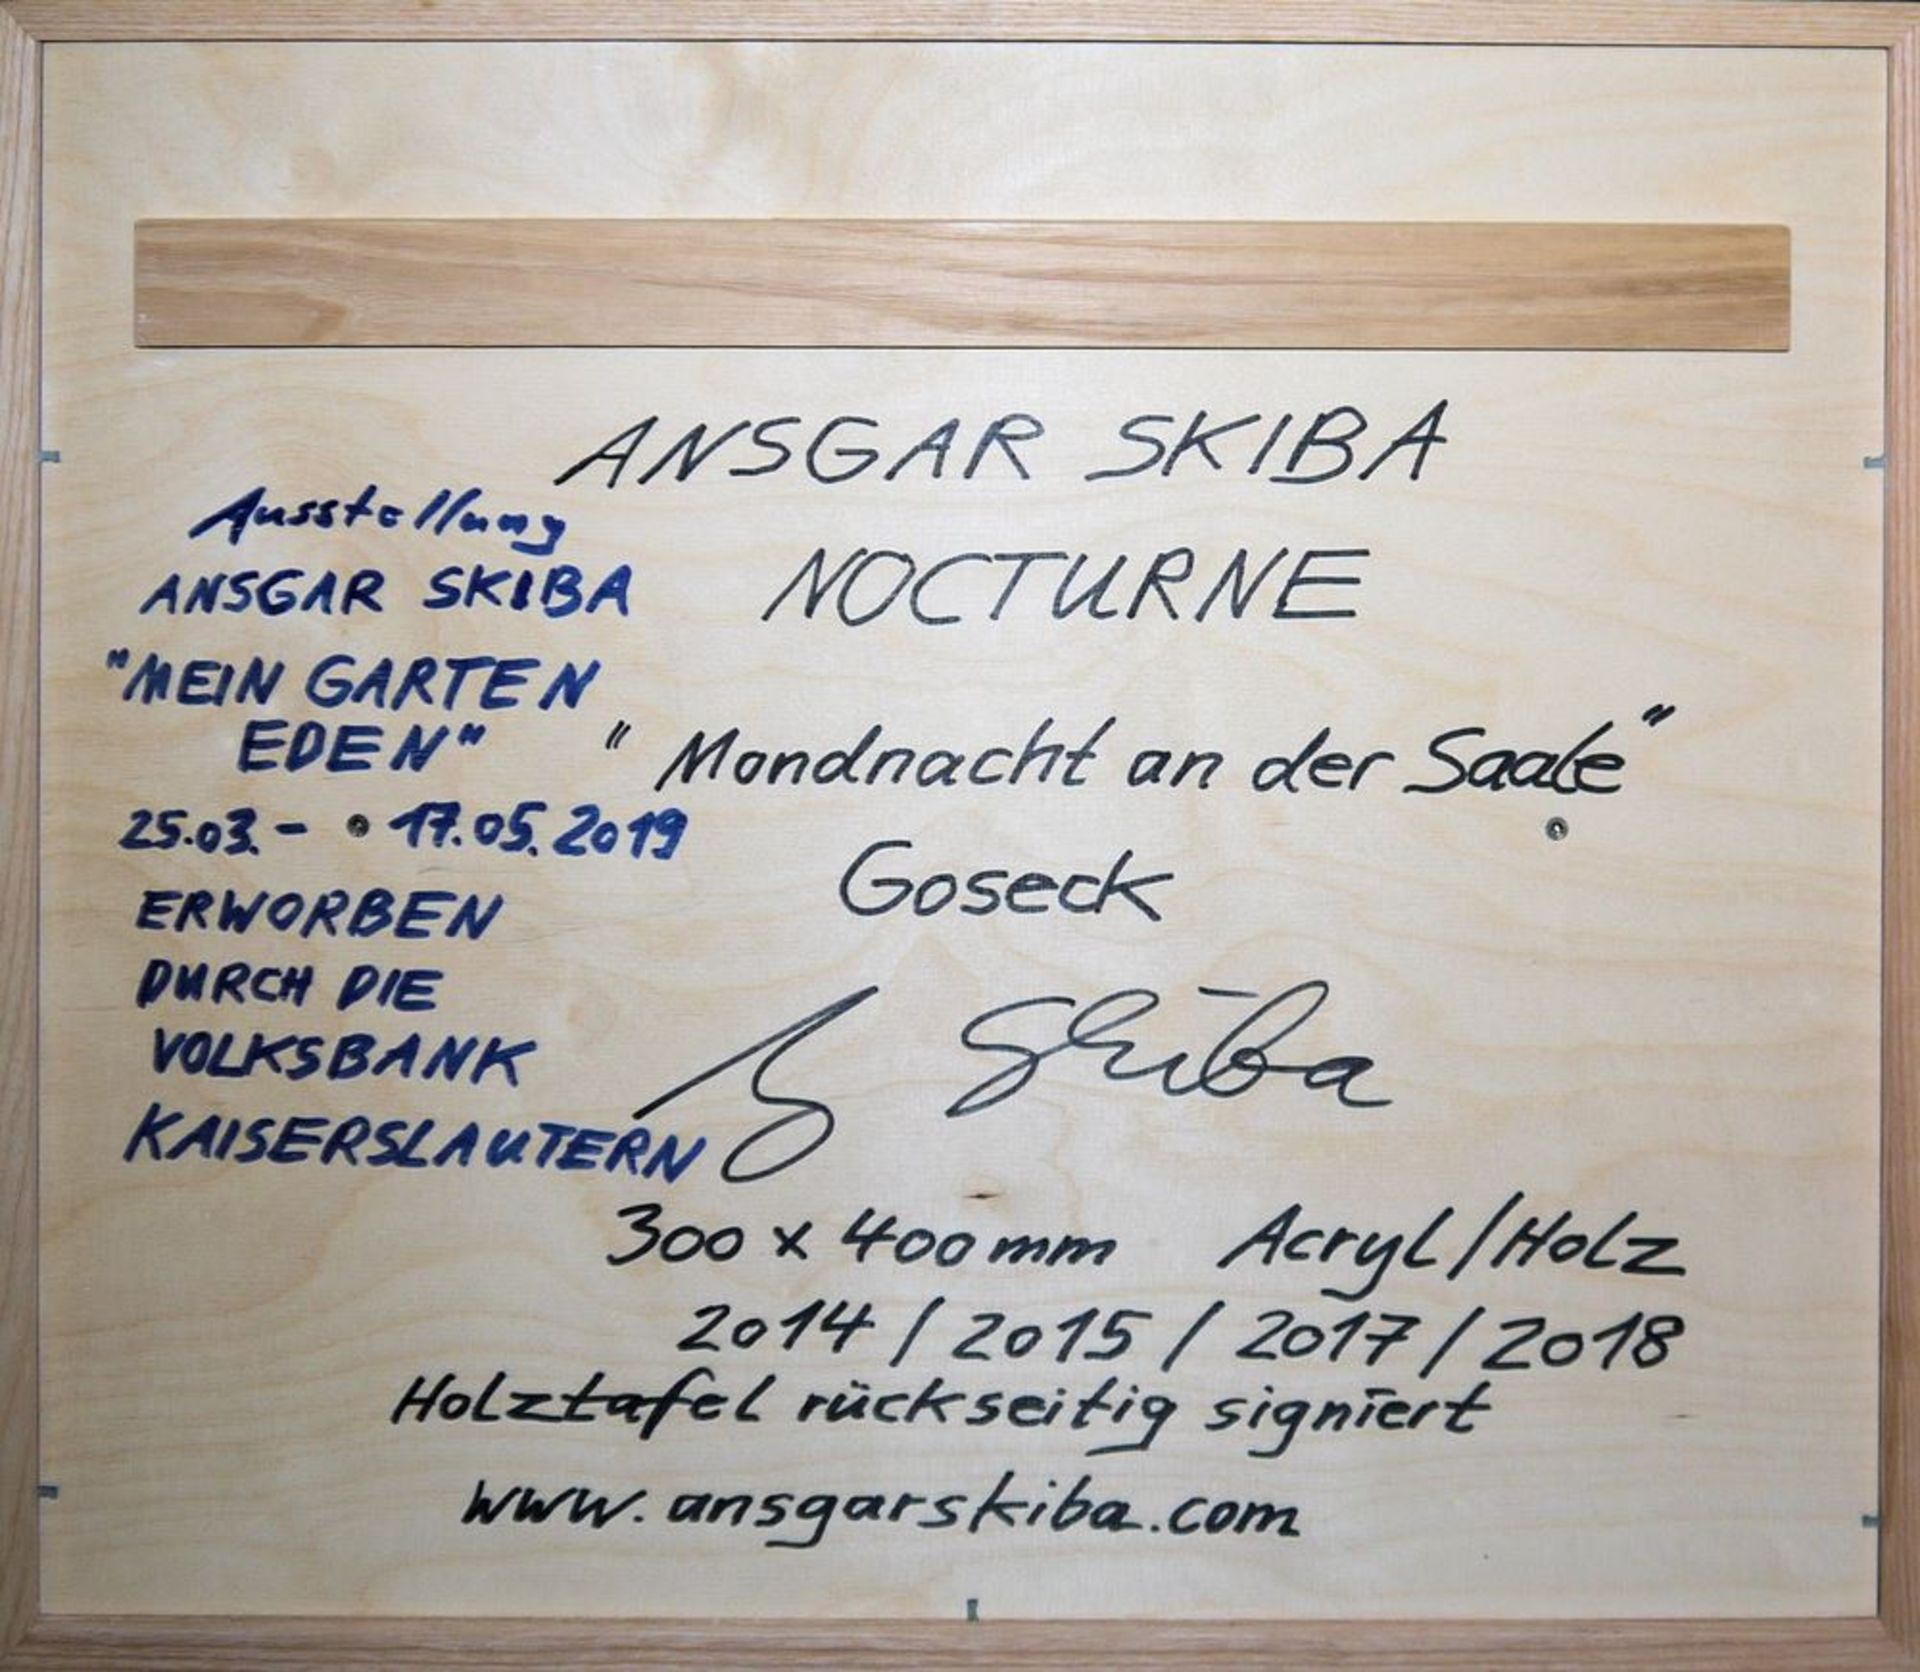 Ansgar Skiba, "Nocturne - Mondnacht an der Saale", signiertes Acrylgemälde von 2014/18, gerahmt - Image 3 of 3